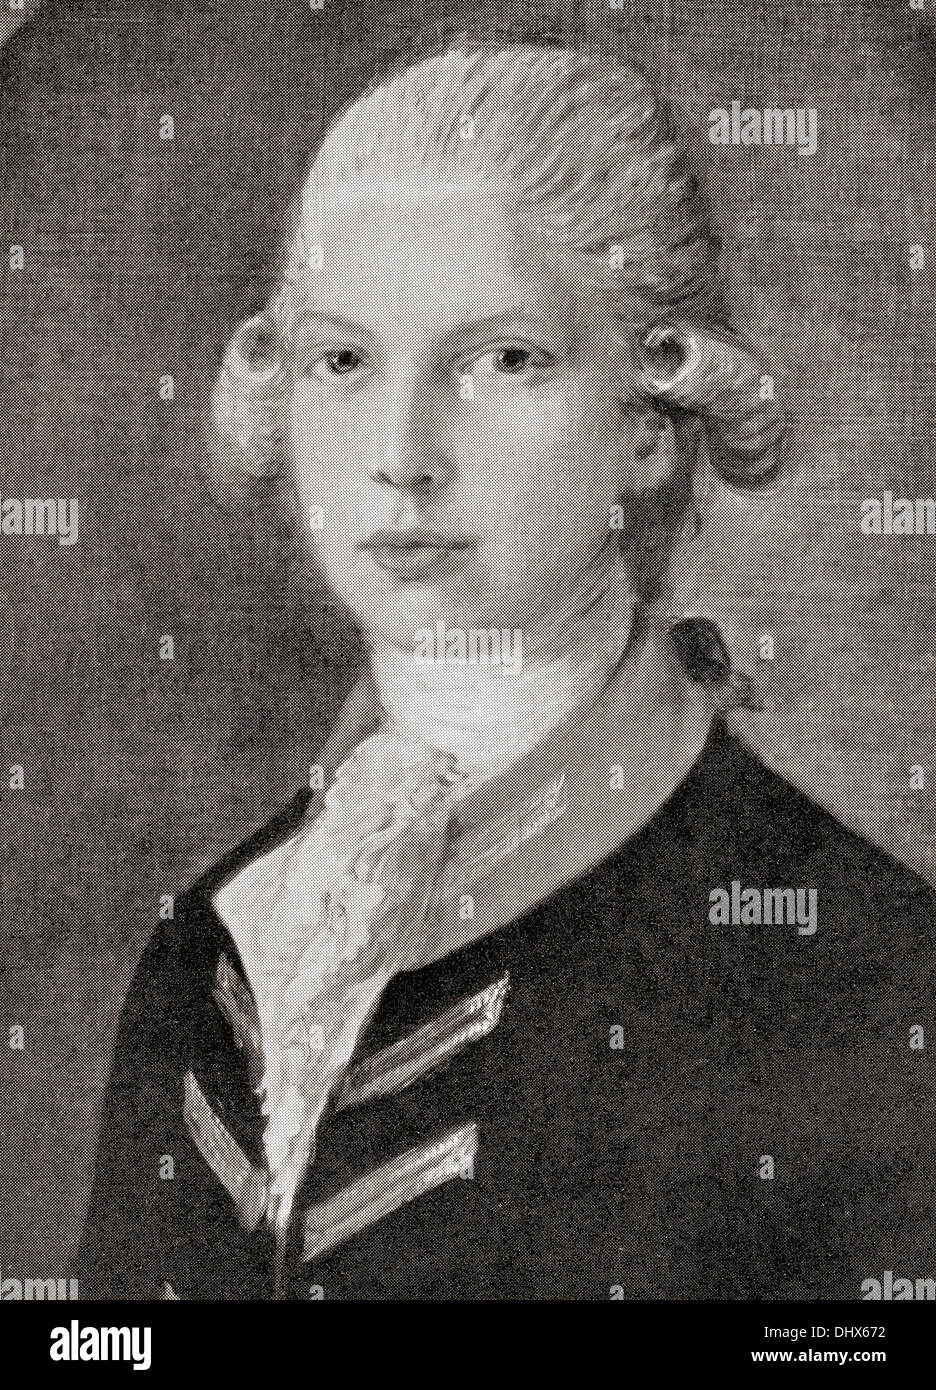 Il Prince Edward, Duca di Kent e Strathearn, 1767 - 1820, padre della regina Victoria. Visto qui come un bambino. Foto Stock